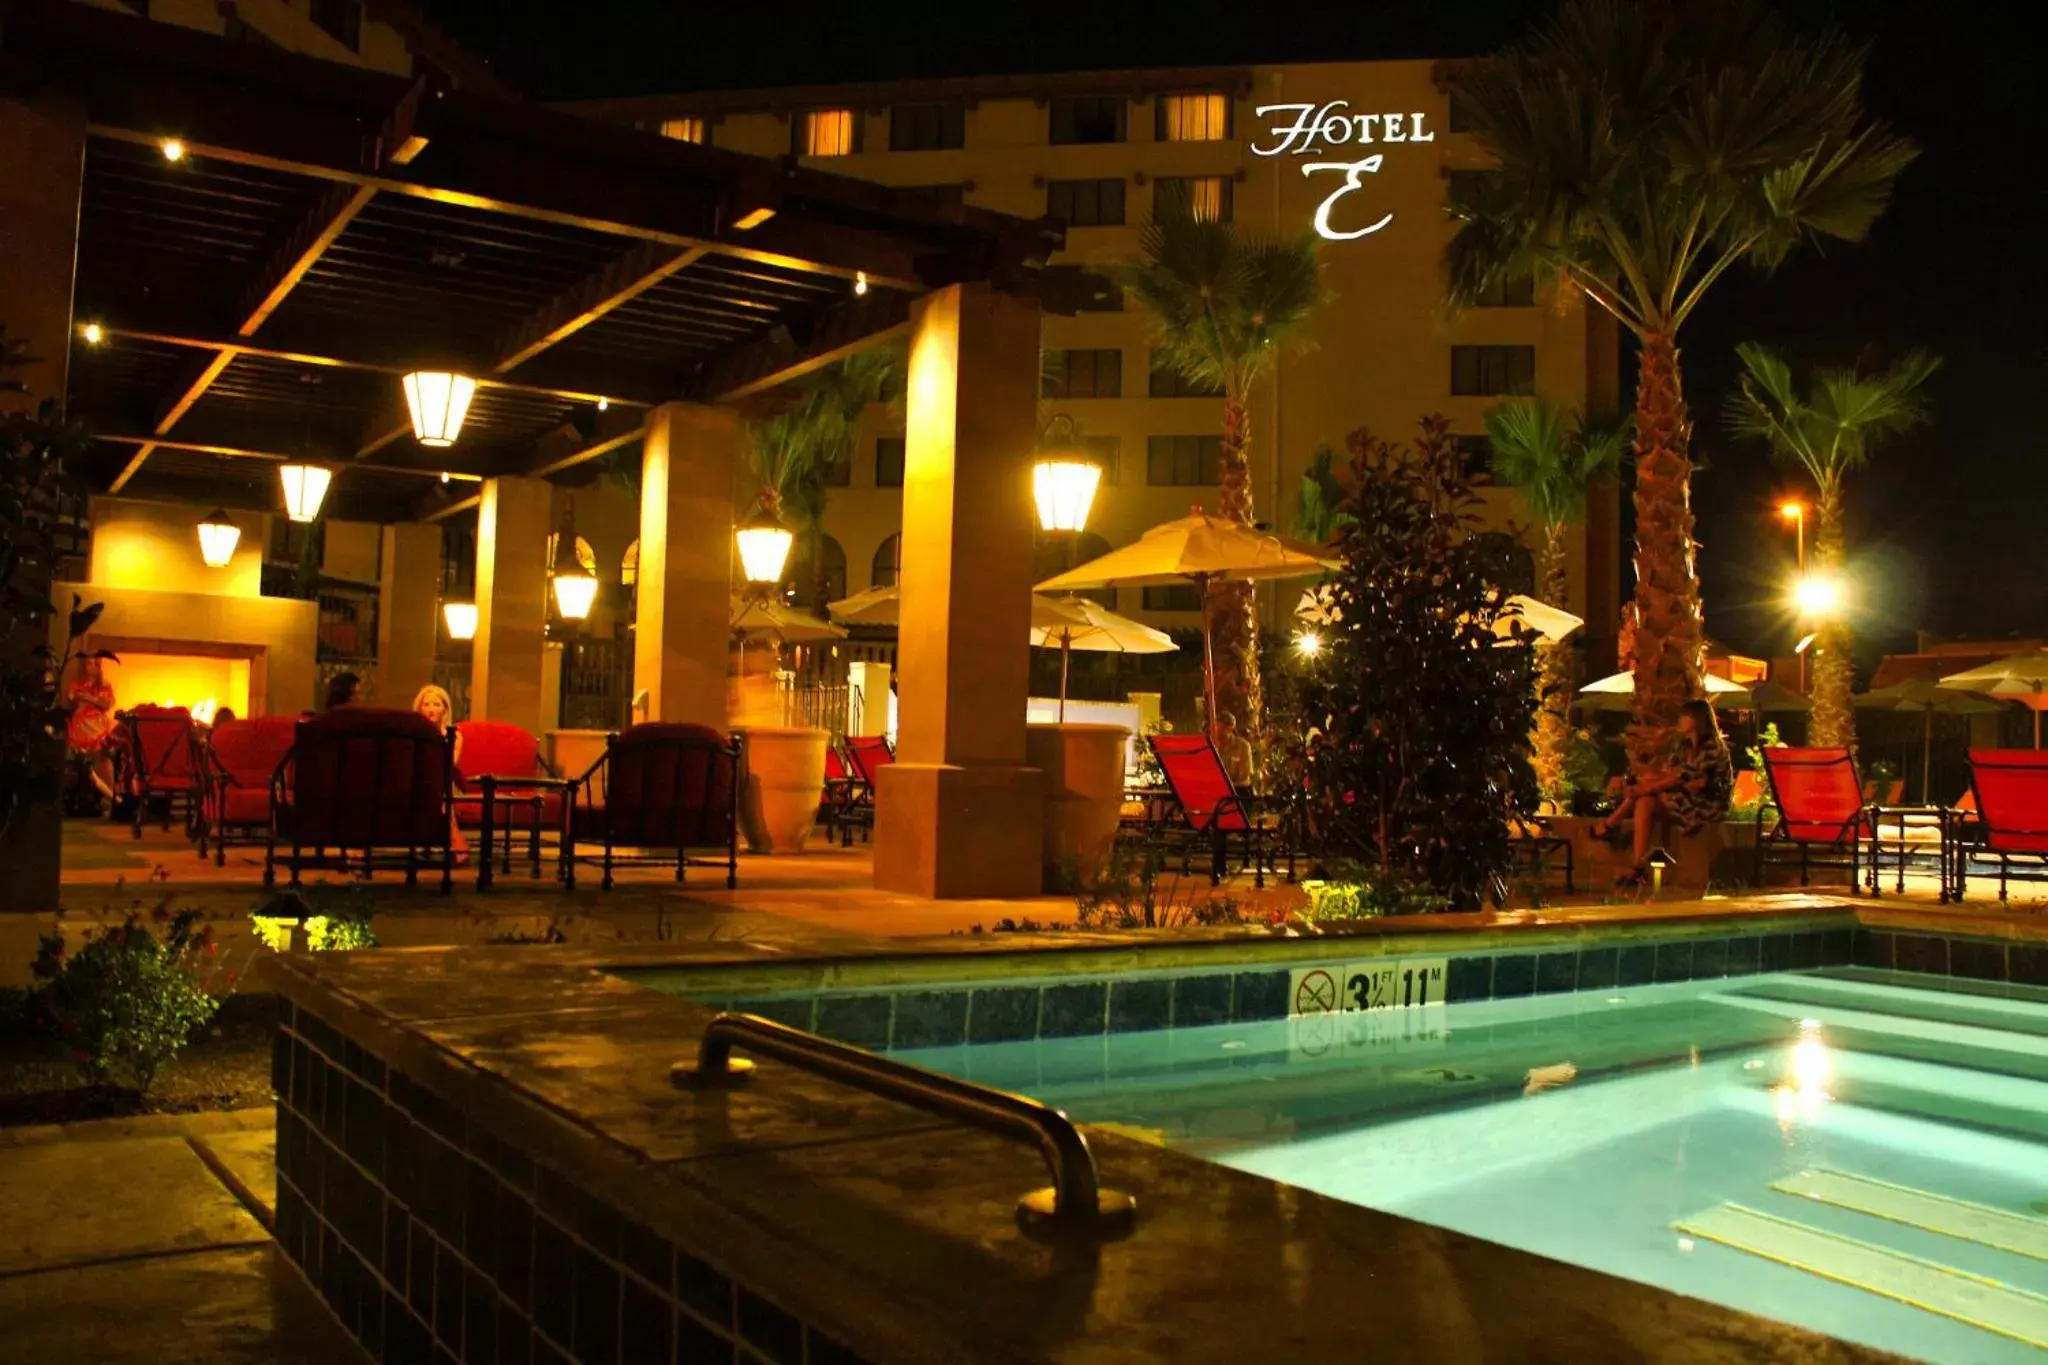 Night, Swimming Pool in Hotel Encanto de Las Cruces